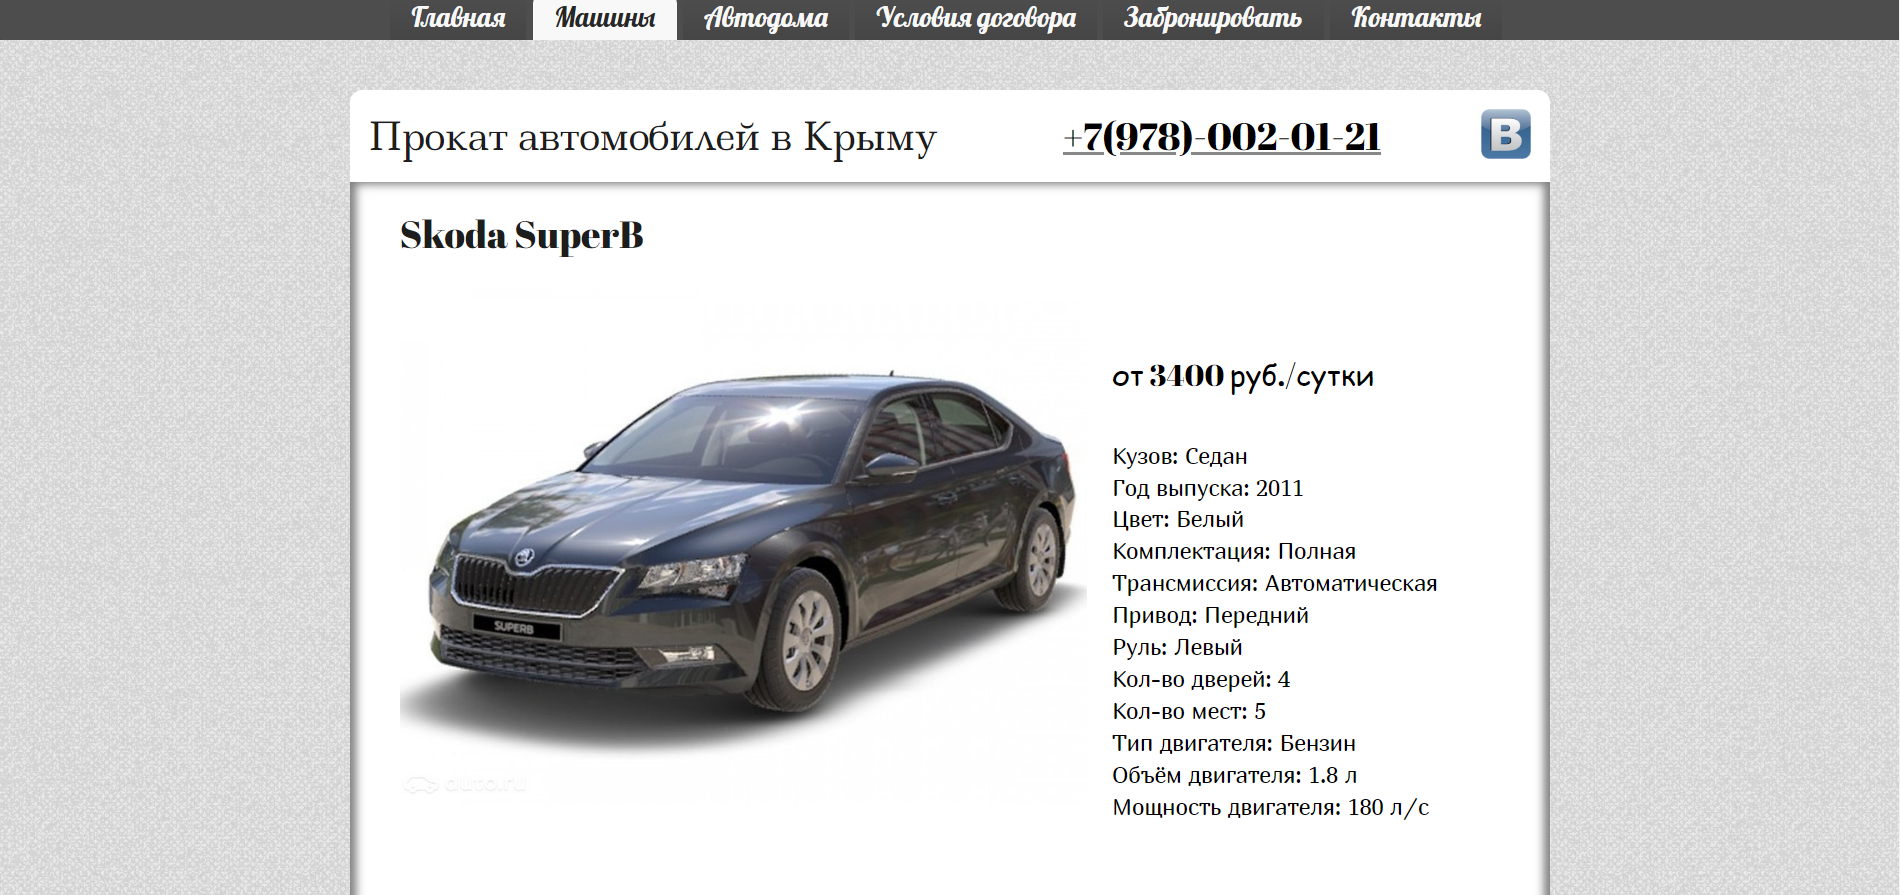 Прокат автомобилей в Крыму